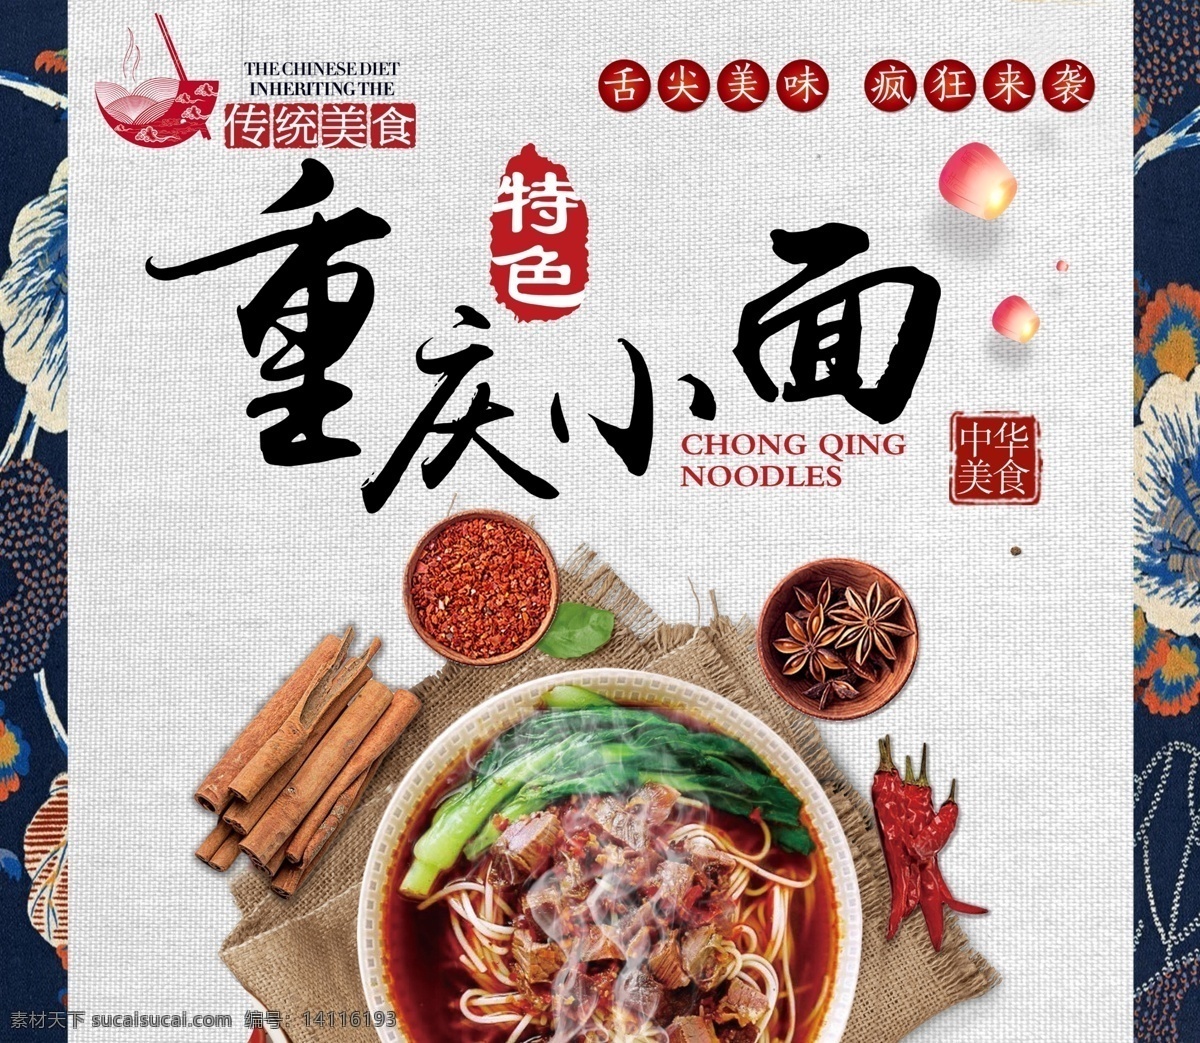 重庆小面广告 重庆小面 辣椒 面条 碗 花瓣 传统美食